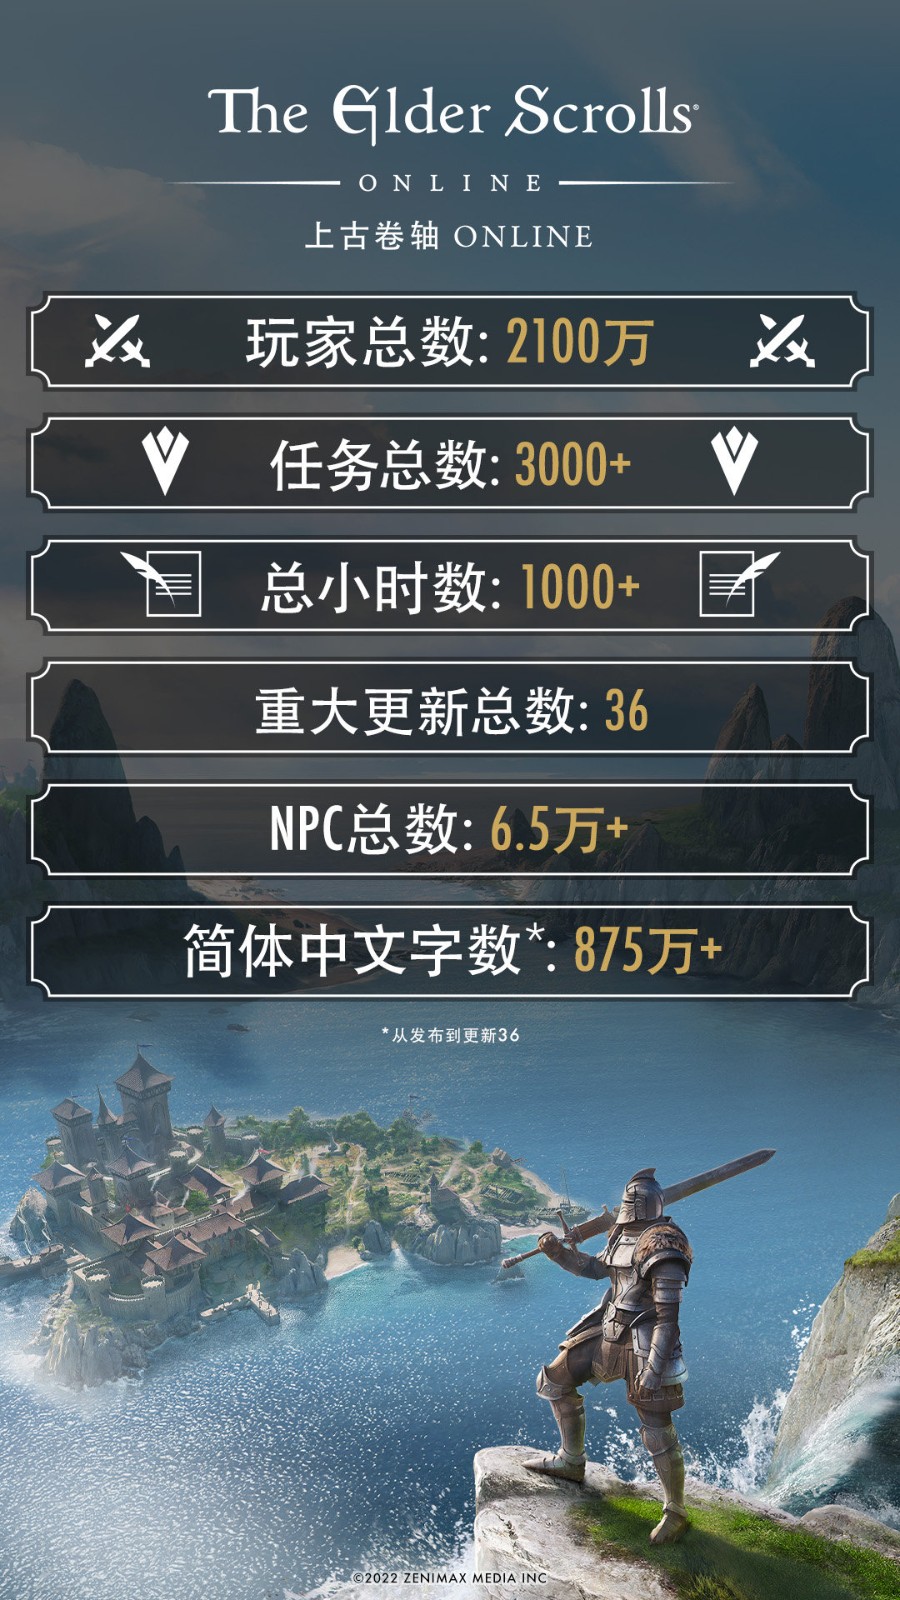 《上古卷軸OL》現已加入中文 可加入2100萬玩家行列